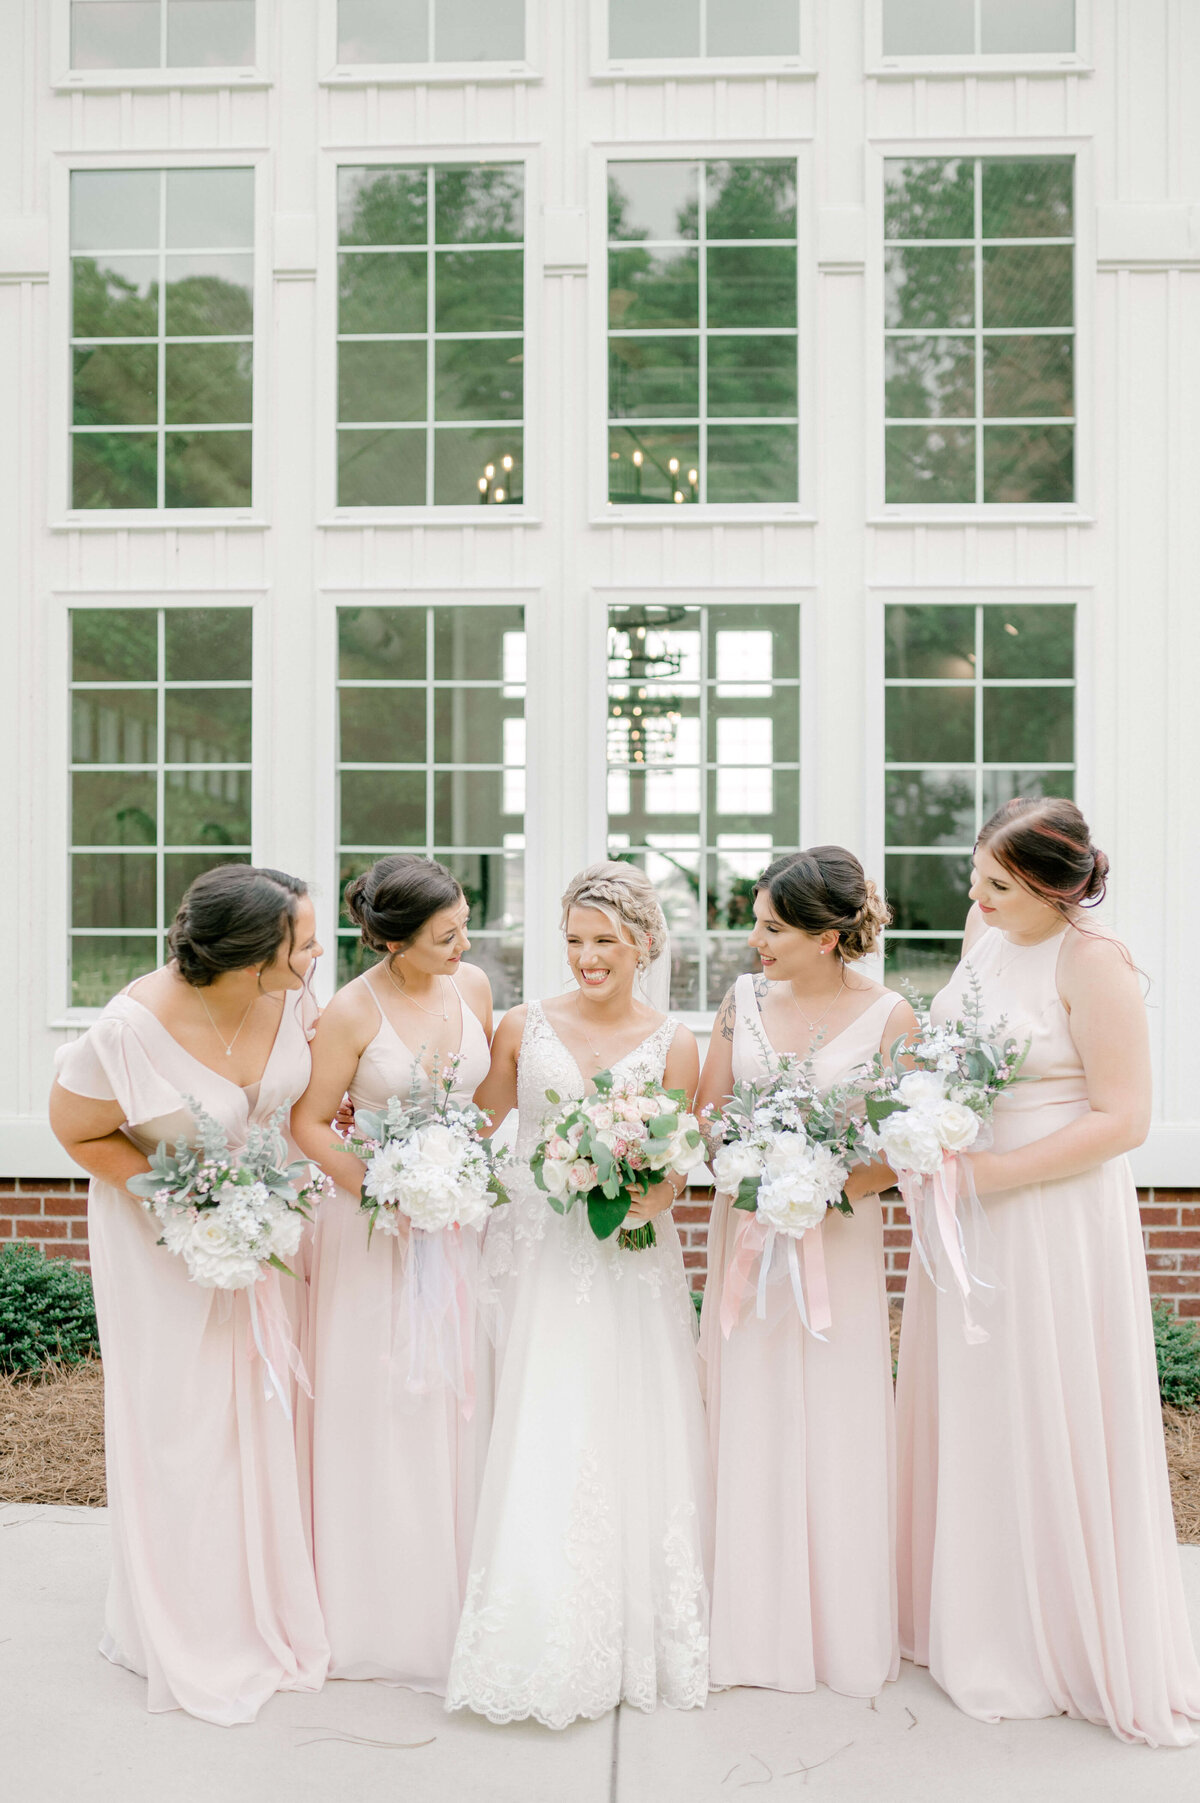 Bridesmaids in pink dresses looking bride suring wedding party photos